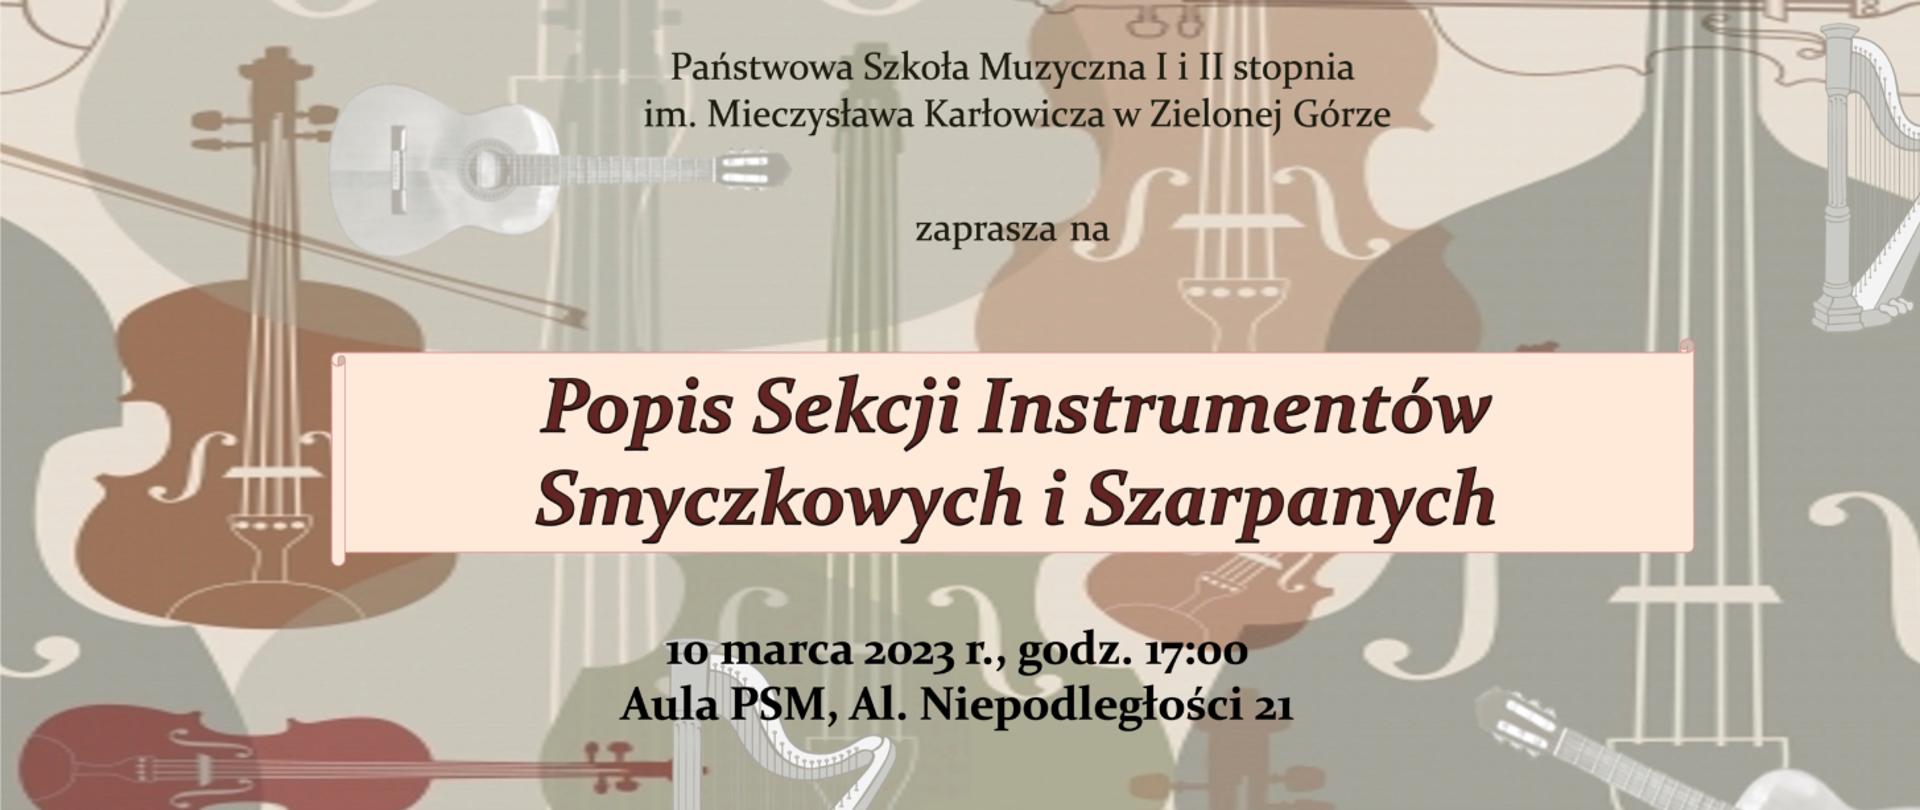 Plakat przedstawia różne ikony instrumenty smyczkowe w odcieniu brązowym na zielono-szarym tle, pośrodku tekst: Popis Sekcji Instrumentów Smyczkowych i Szarpanych, pod spodem 10 marca 2023 r. Aula PSM.